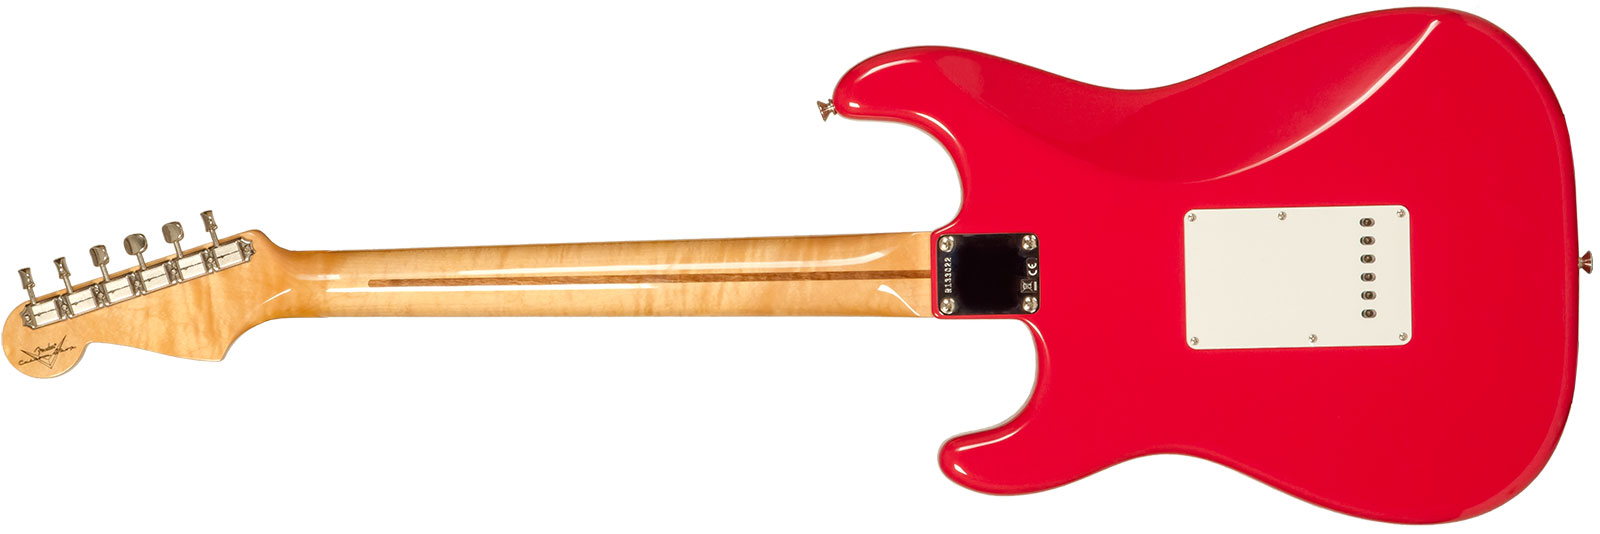 Fender Custom Shop Strat 1956 3s Trem Mn #r133022 - Nos Fiesta Red - Str shape electric guitar - Variation 1